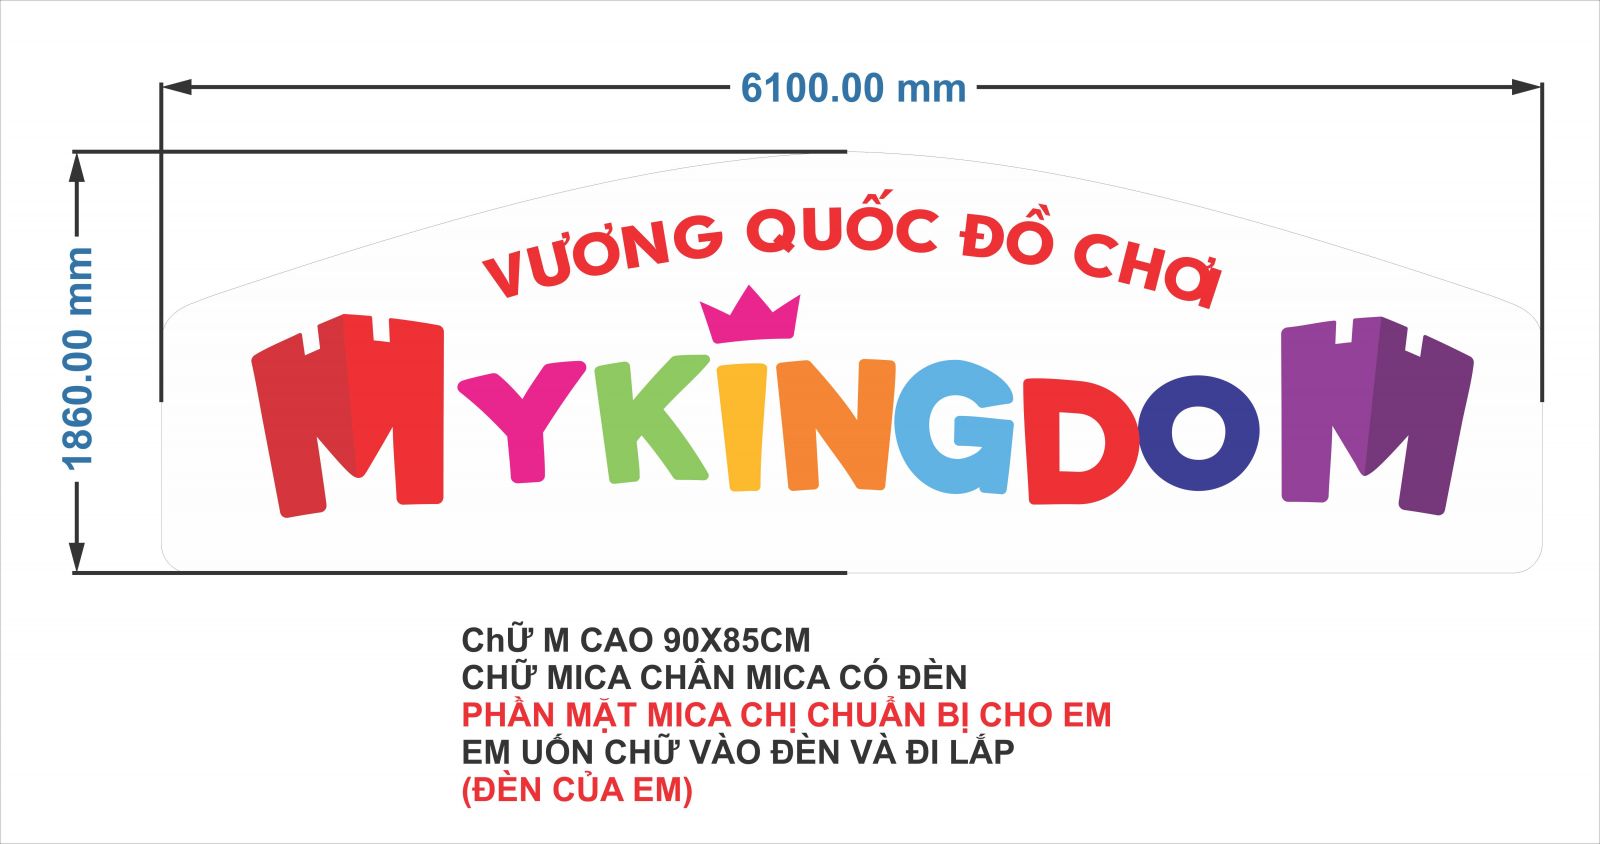 sản xuất thi công biển hiệu quảng cáo mykingdom